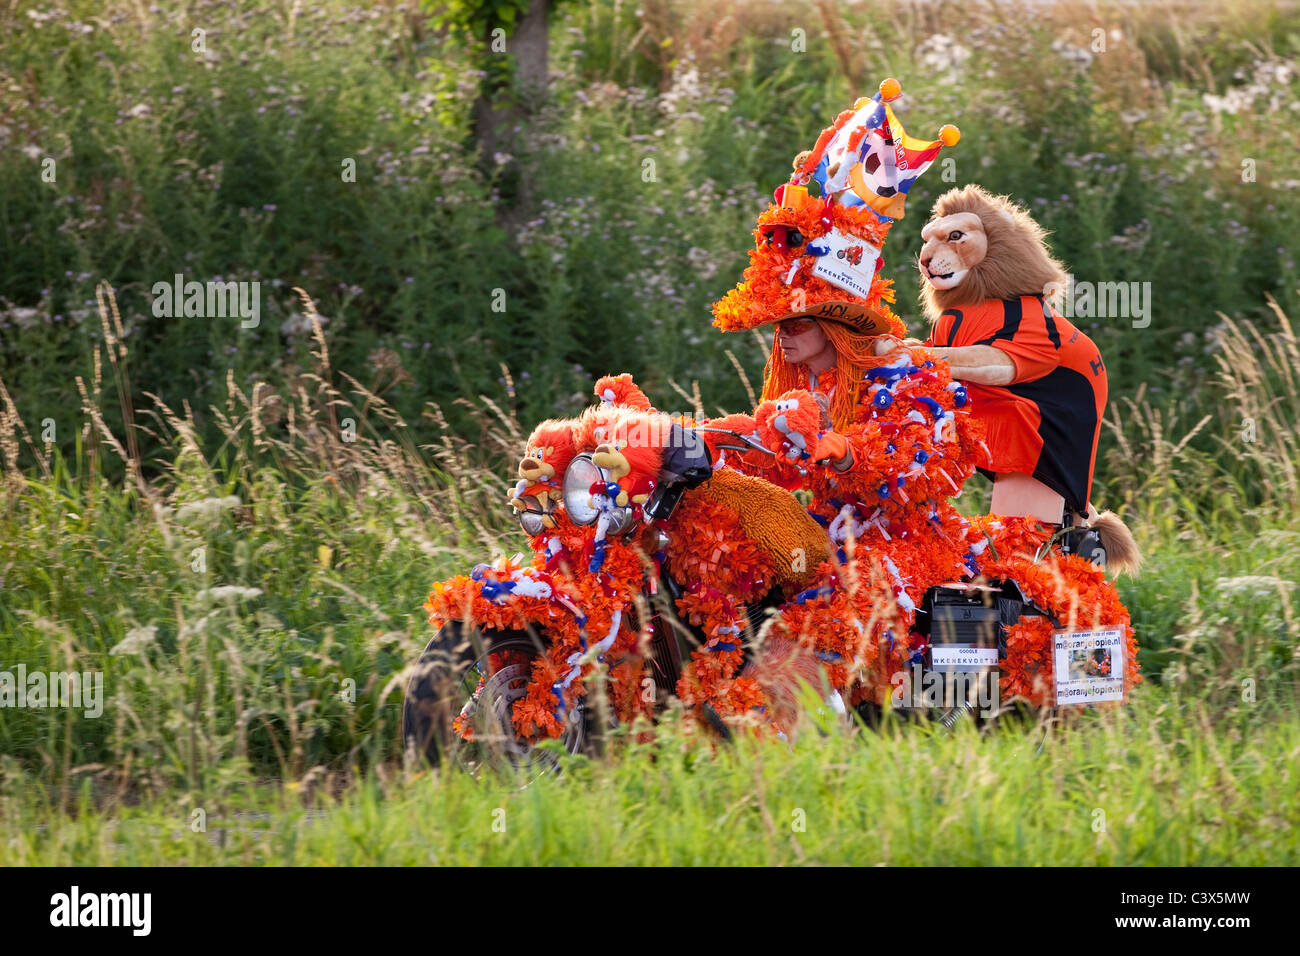 Les Pays-Bas, Coupe du Monde de Football en juillet 2010. Décorées dans un motocycliste, orange Oranje Jopie, supporter de l'équipe nationale des Pays-Bas. Banque D'Images